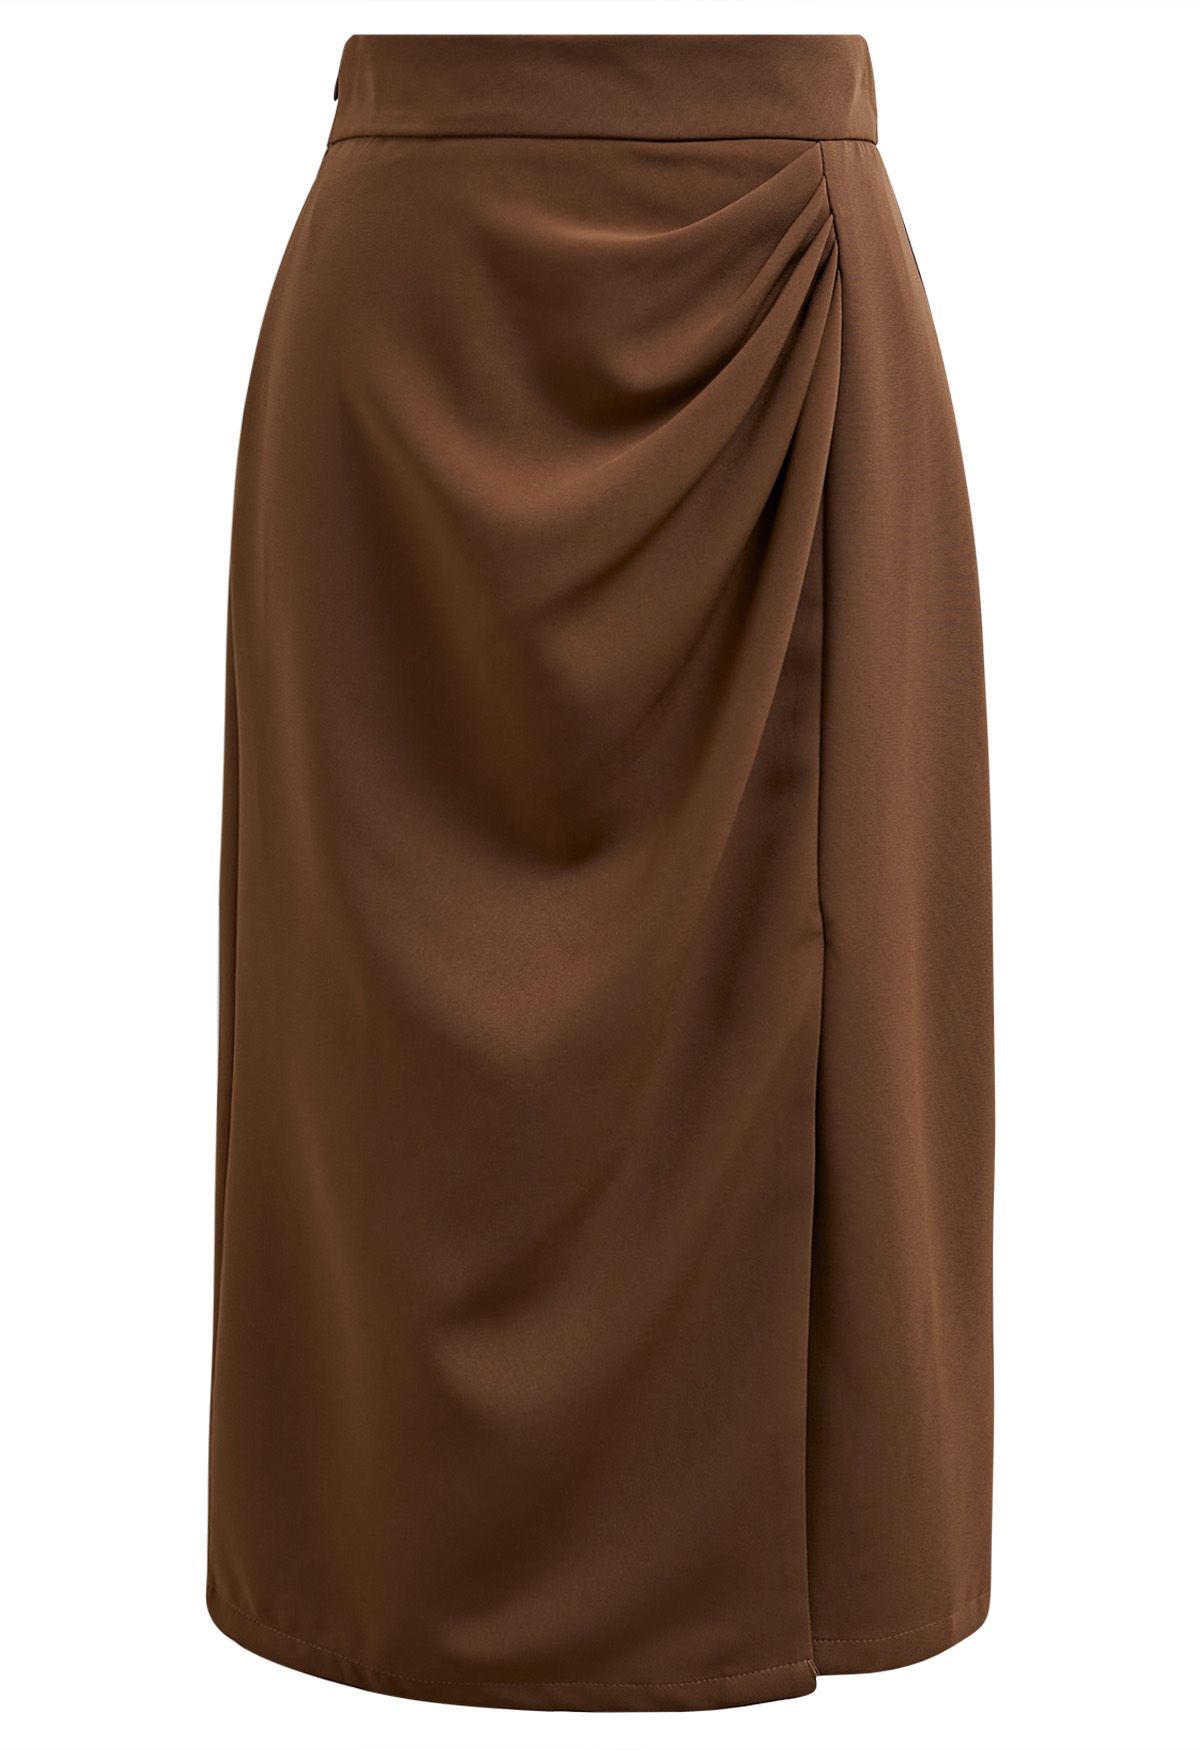 Encantadora falda lápiz con abertura delantera y pliegues en color canela